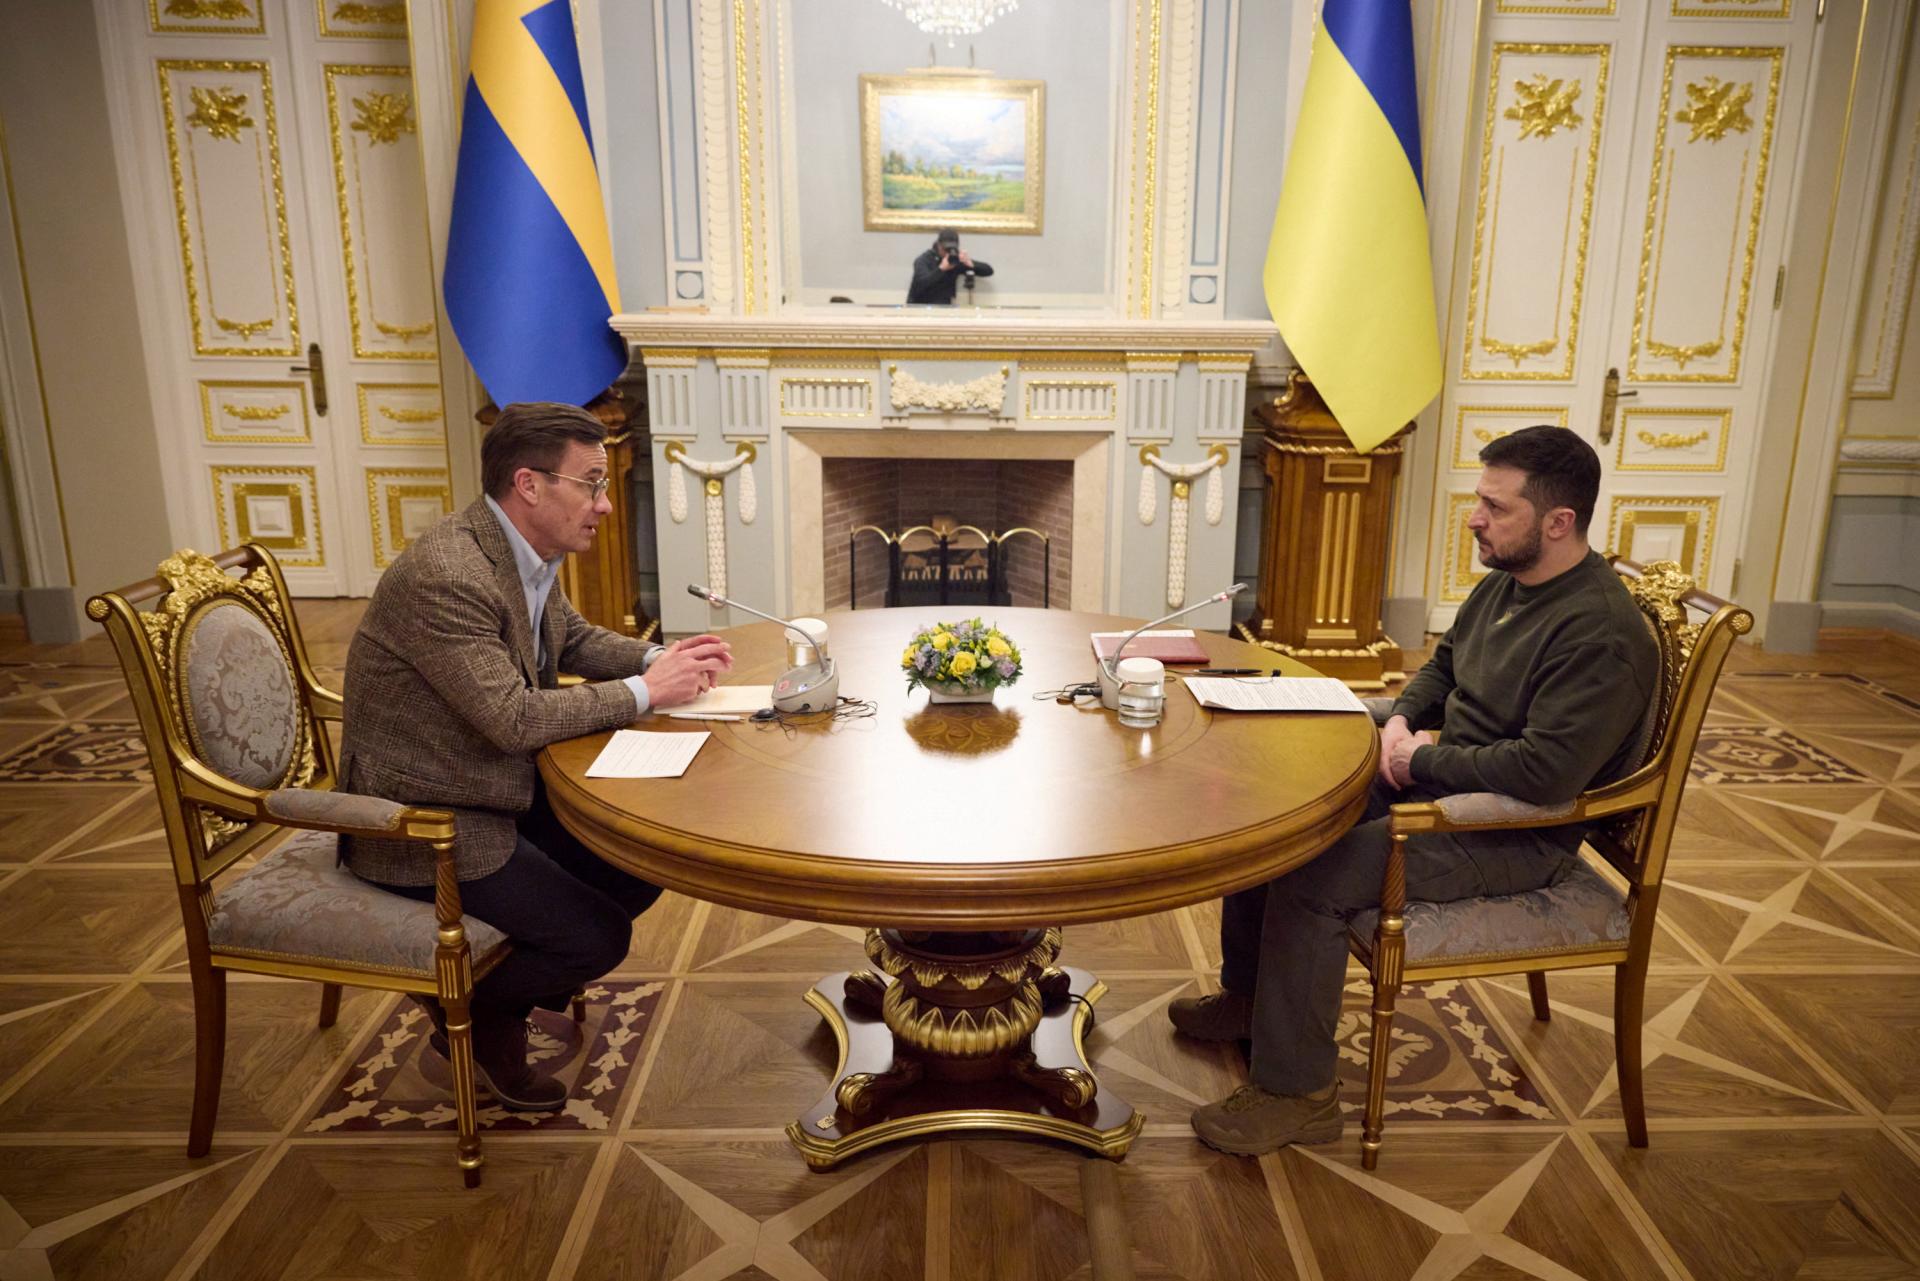 Švédsko nevylučuje dodanie gripenov Ukrajine, chce však medzinárodnú koalíciu